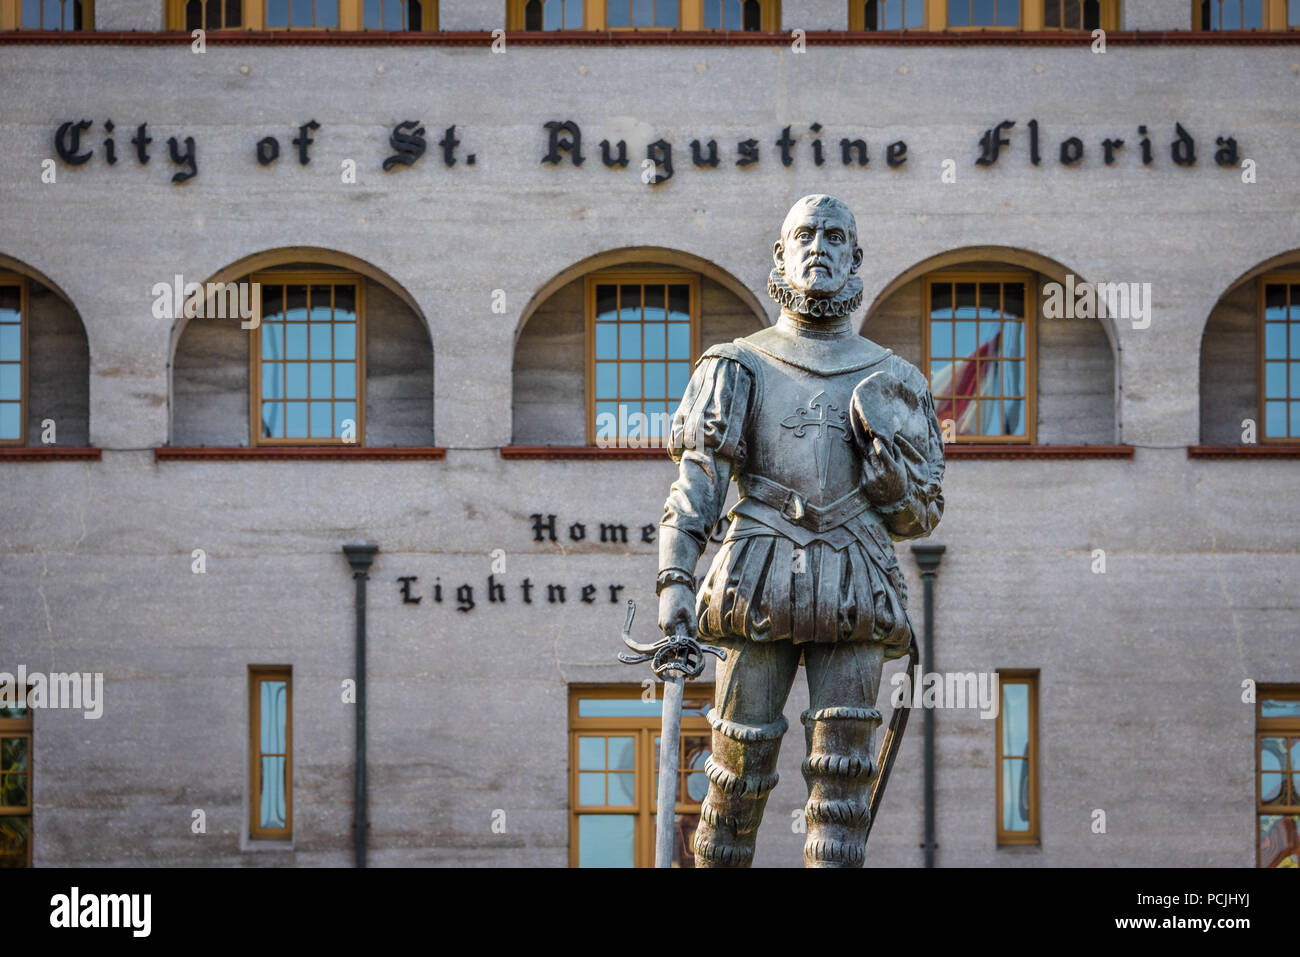 Pedro Menendez de Aviles statue, dans la vieille ville de Saint Augustin commémorant l'explorateur espagnol fondateur de saint Augustin et premier gouverneur de Floride. Banque D'Images